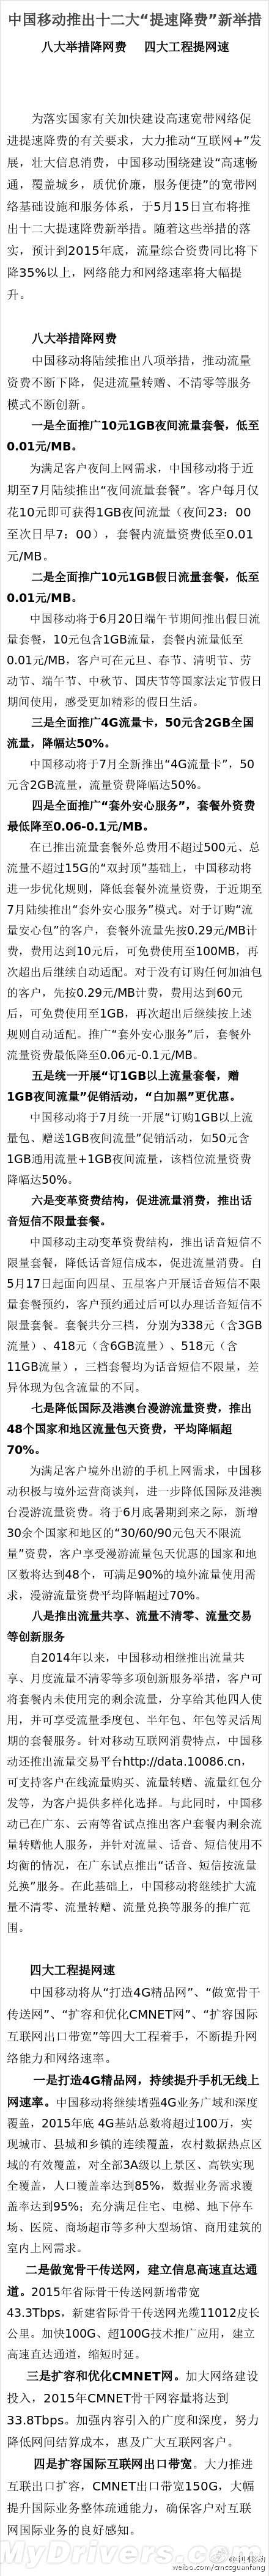 中国移动公布八大举措降手机网费12